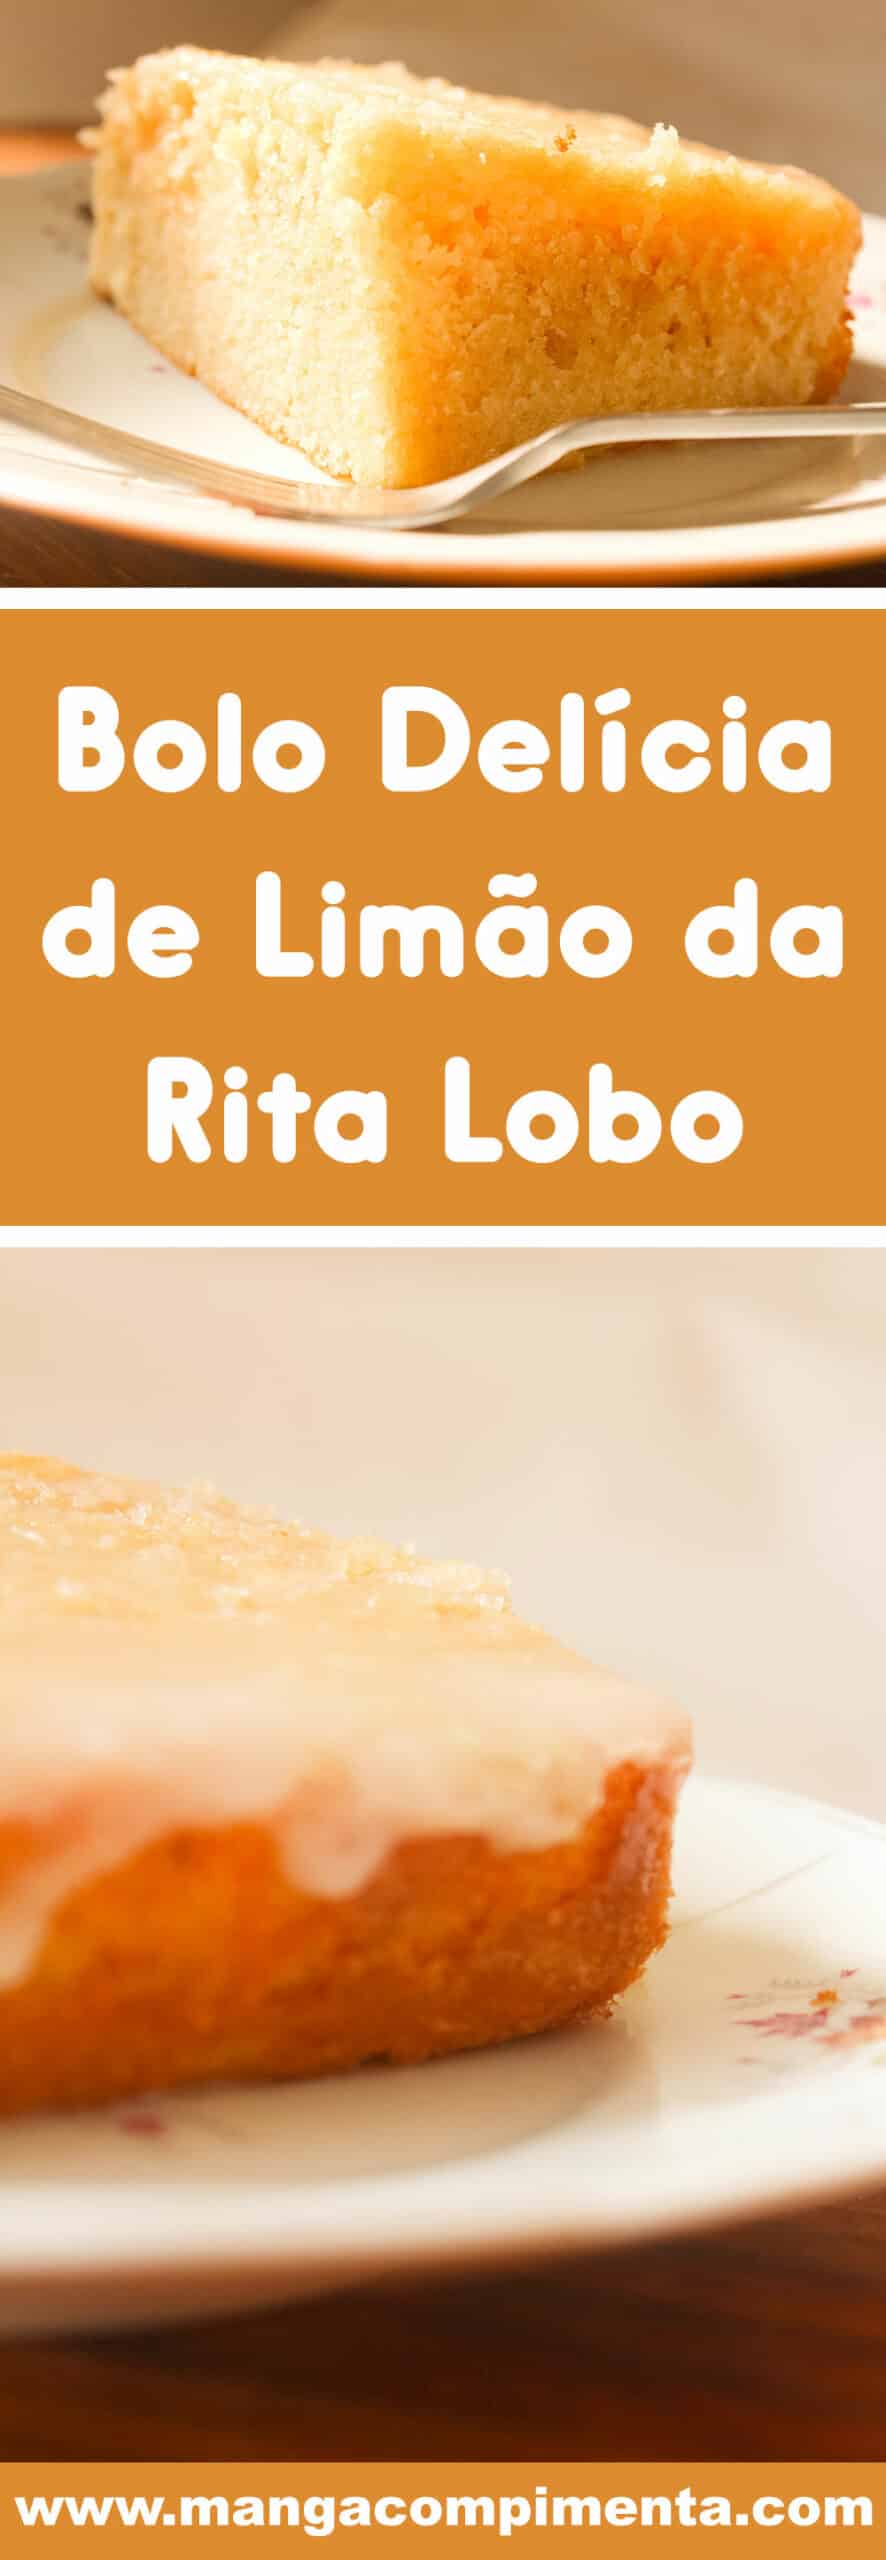 Receita do Bolo Delícia de Limão da Rita Lobo - prepare para o chá da tarde nesse final de semana.